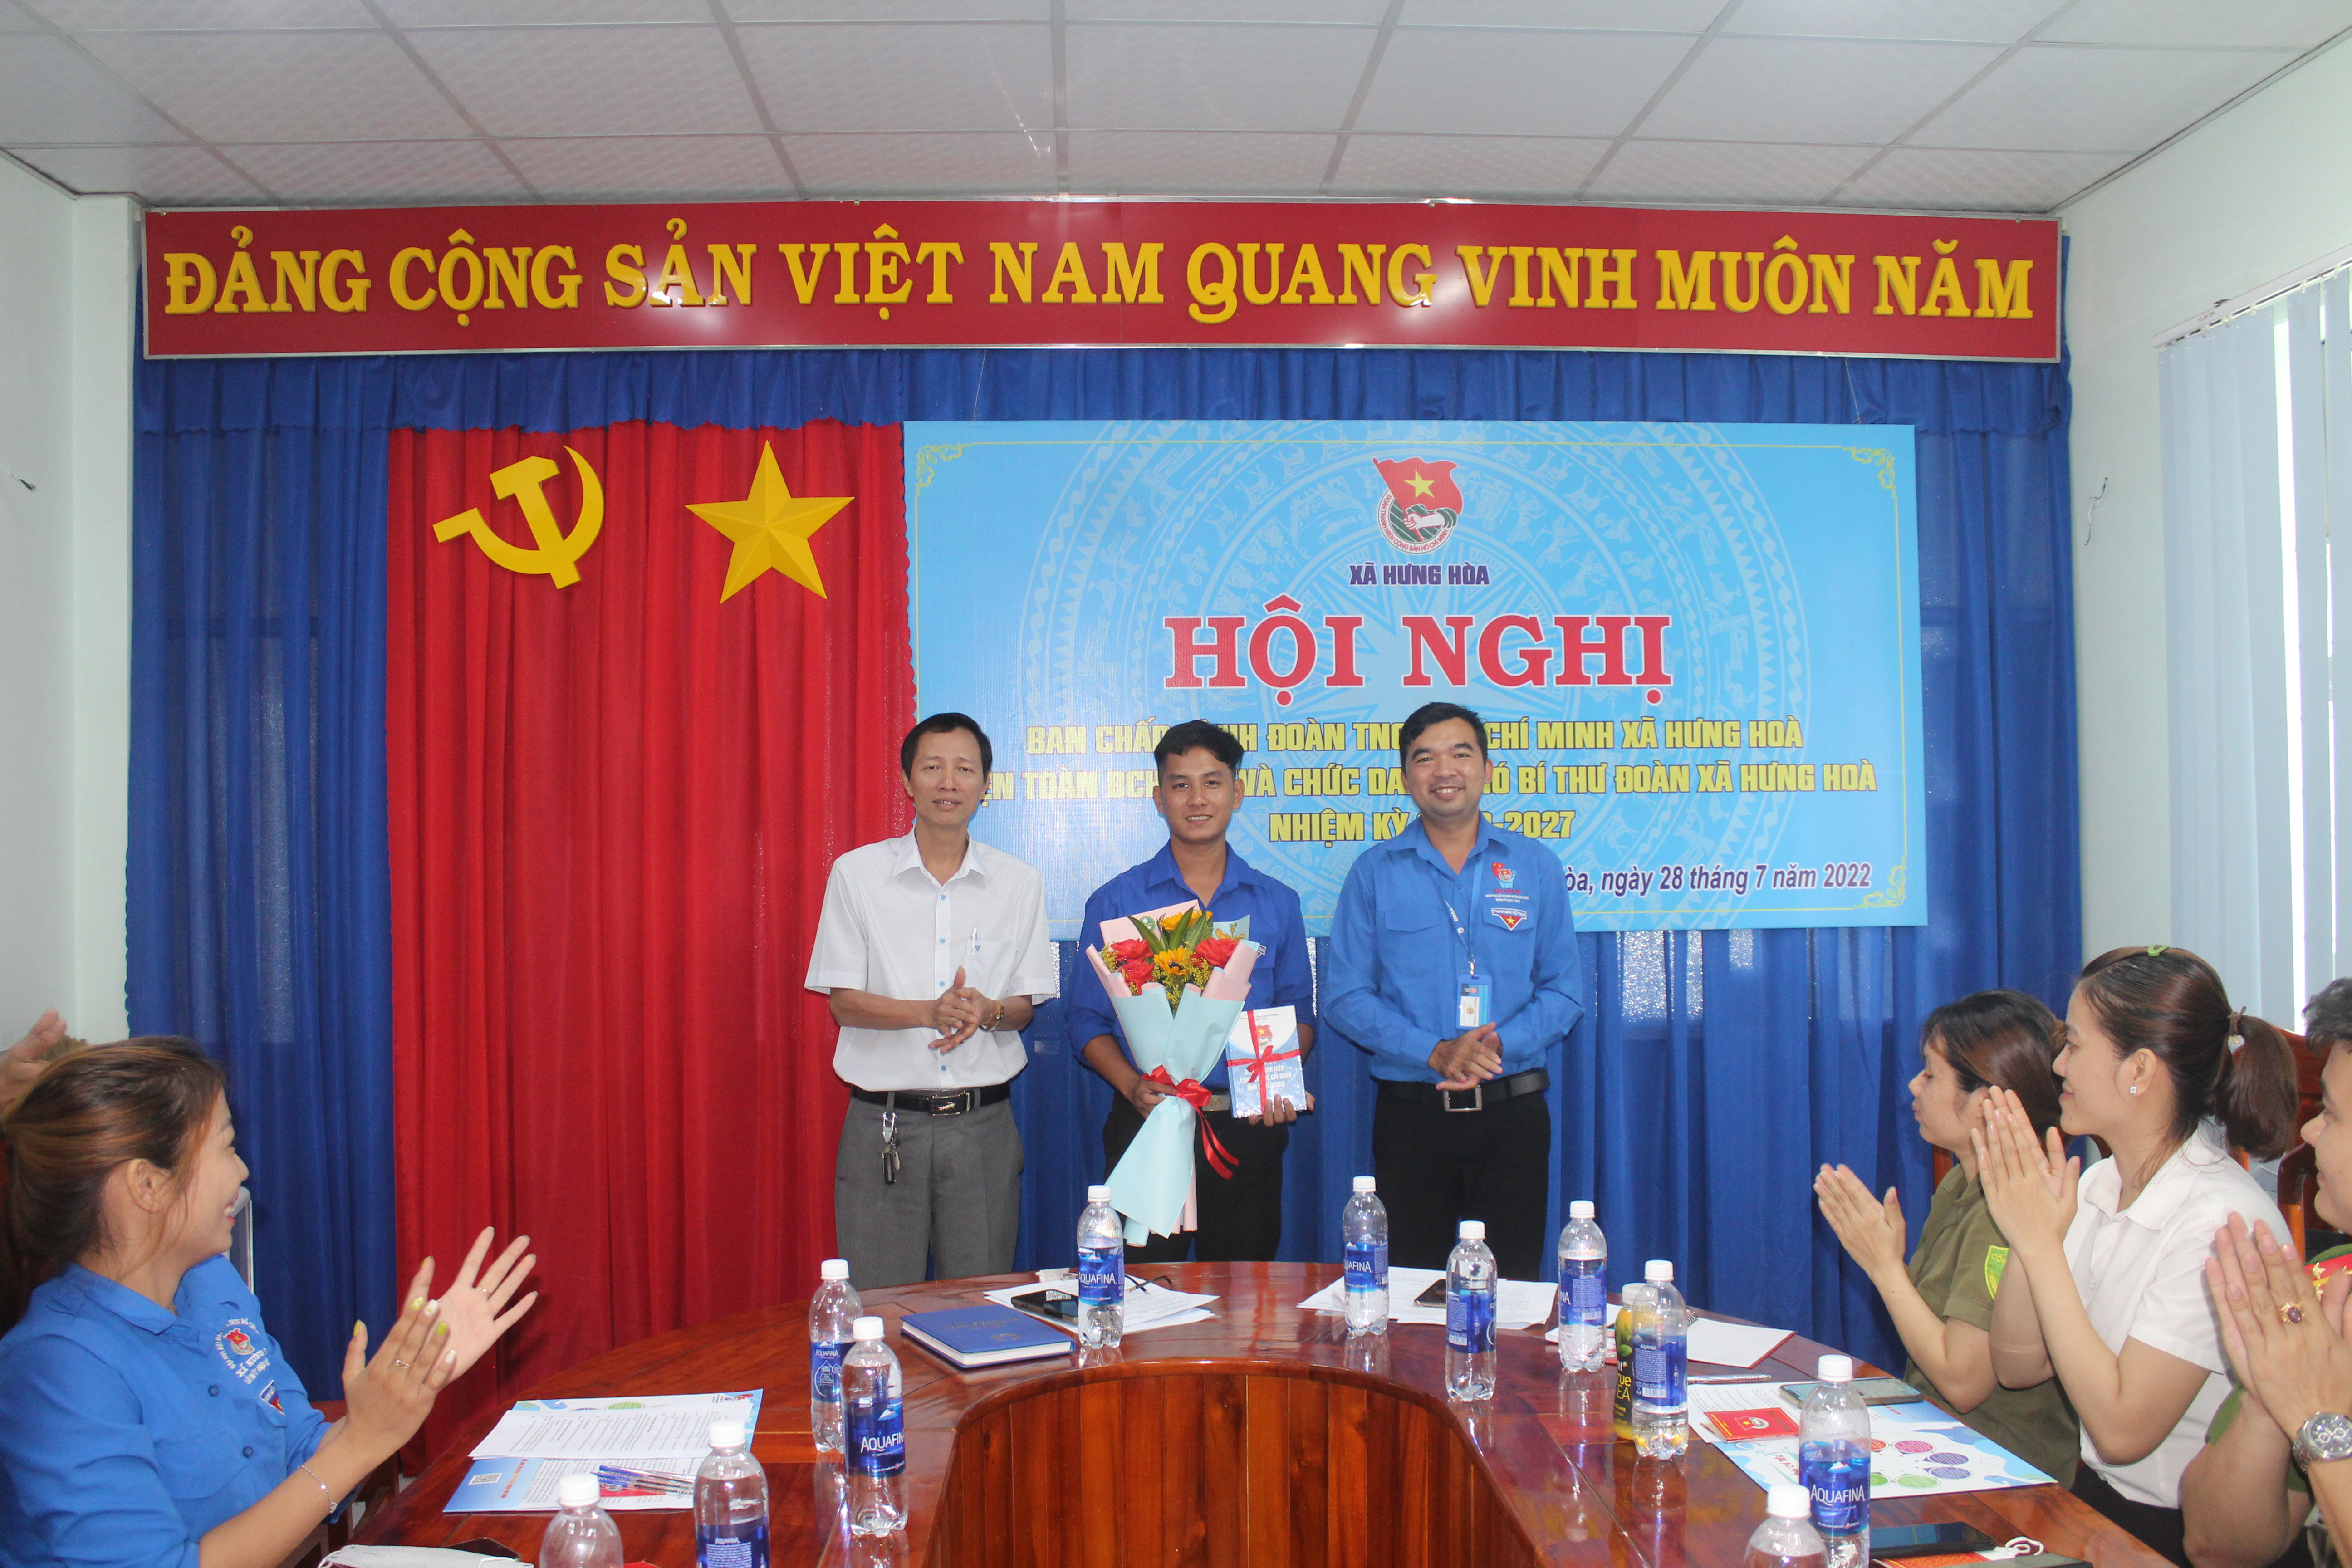 Hội nghị bầu bổ sung BCH, BTV, chức danh phó bí thư Đoàn TNCS Hồ Chí Minh xã Hưng Hoà, nhiệm kỳ 2022 - 2027.